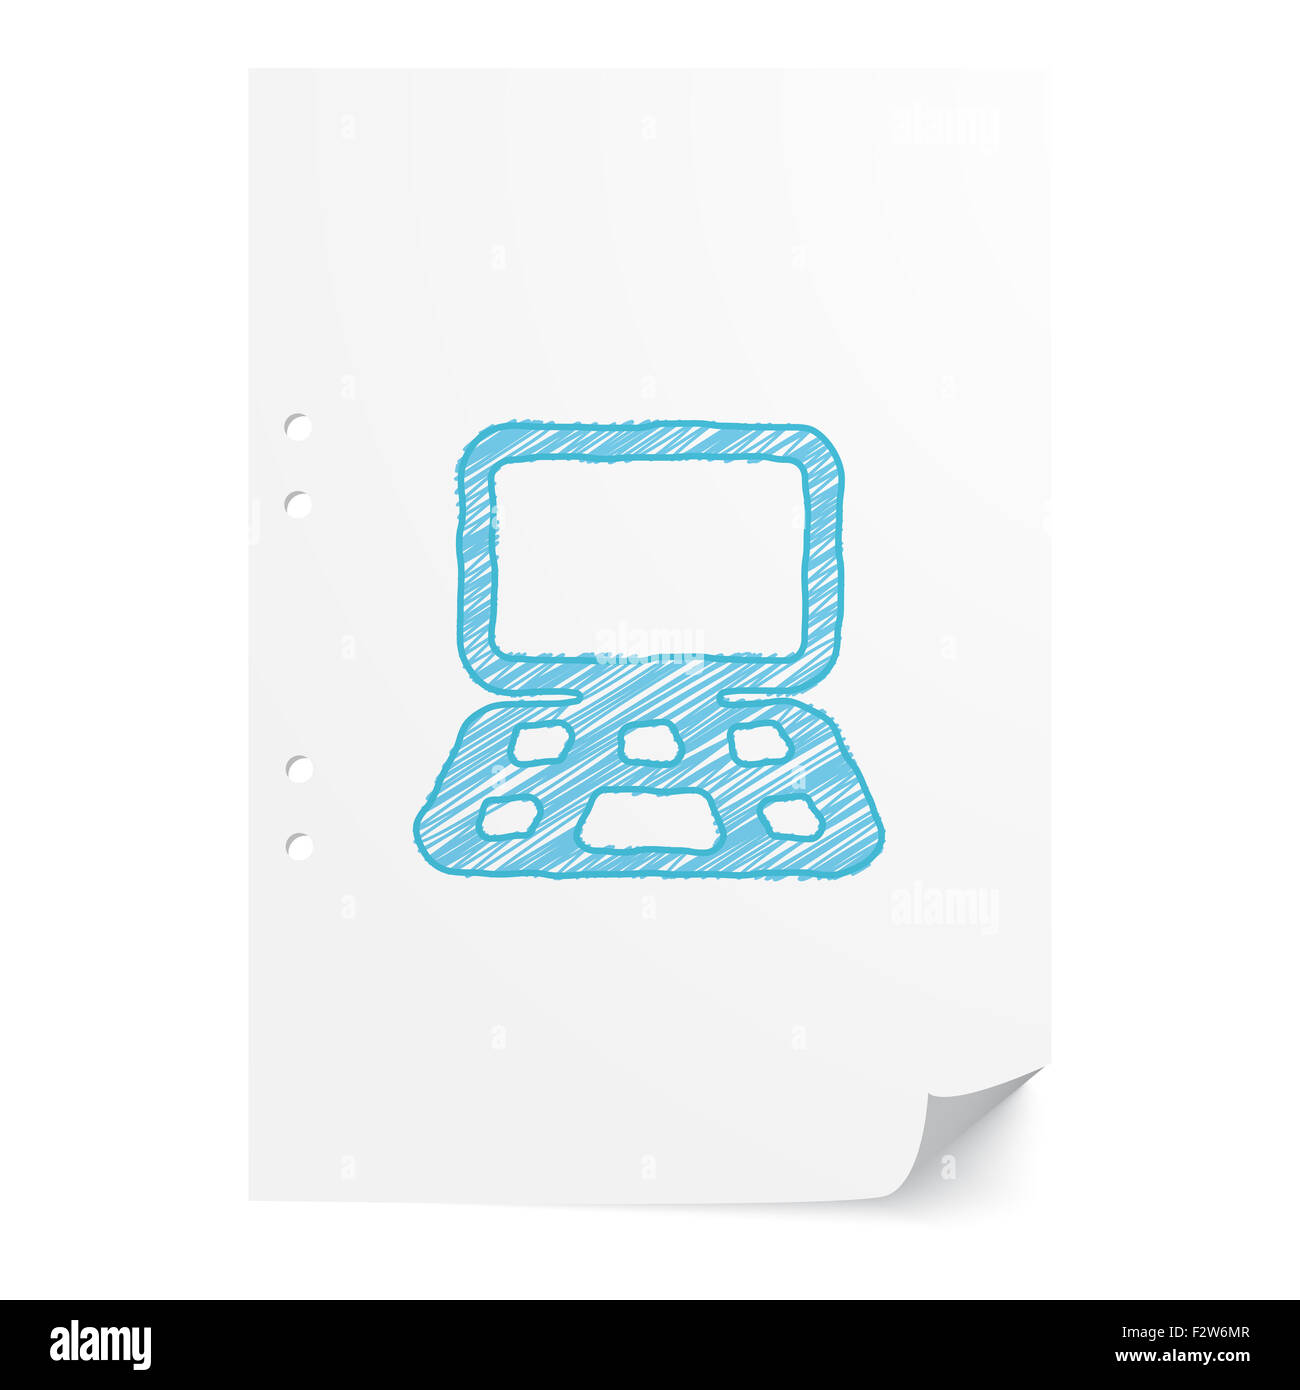 Blu calcolatore handdrawn illustrazione sul foglio di carta bianco con spazio di copia Foto Stock